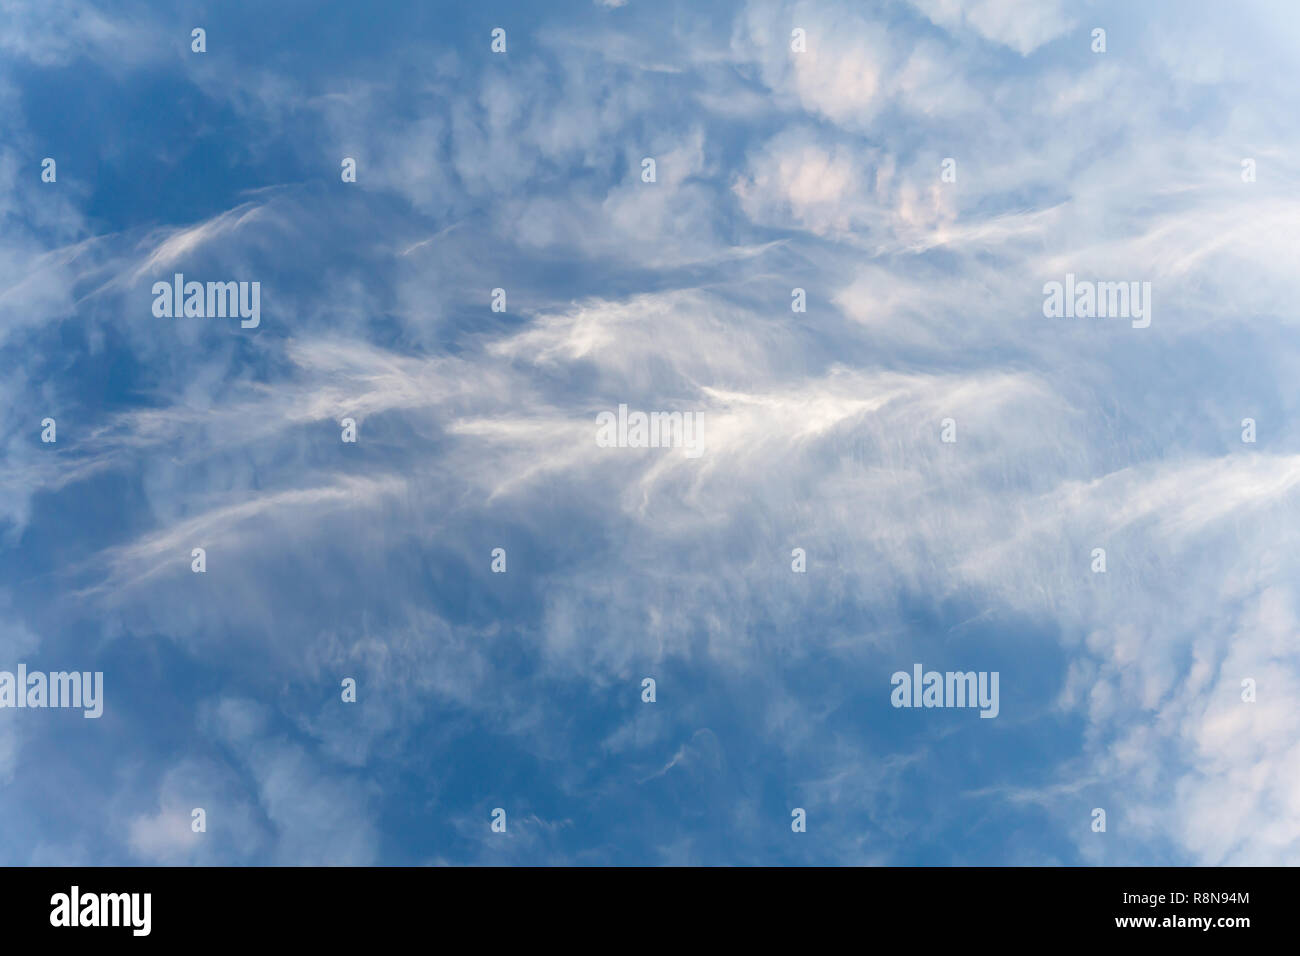 Un ciel rempli de nuages cirrus. Cirrus est un genre de nuage atmosphérique caractérisée par de minces filaments vaporeux,. Banque D'Images